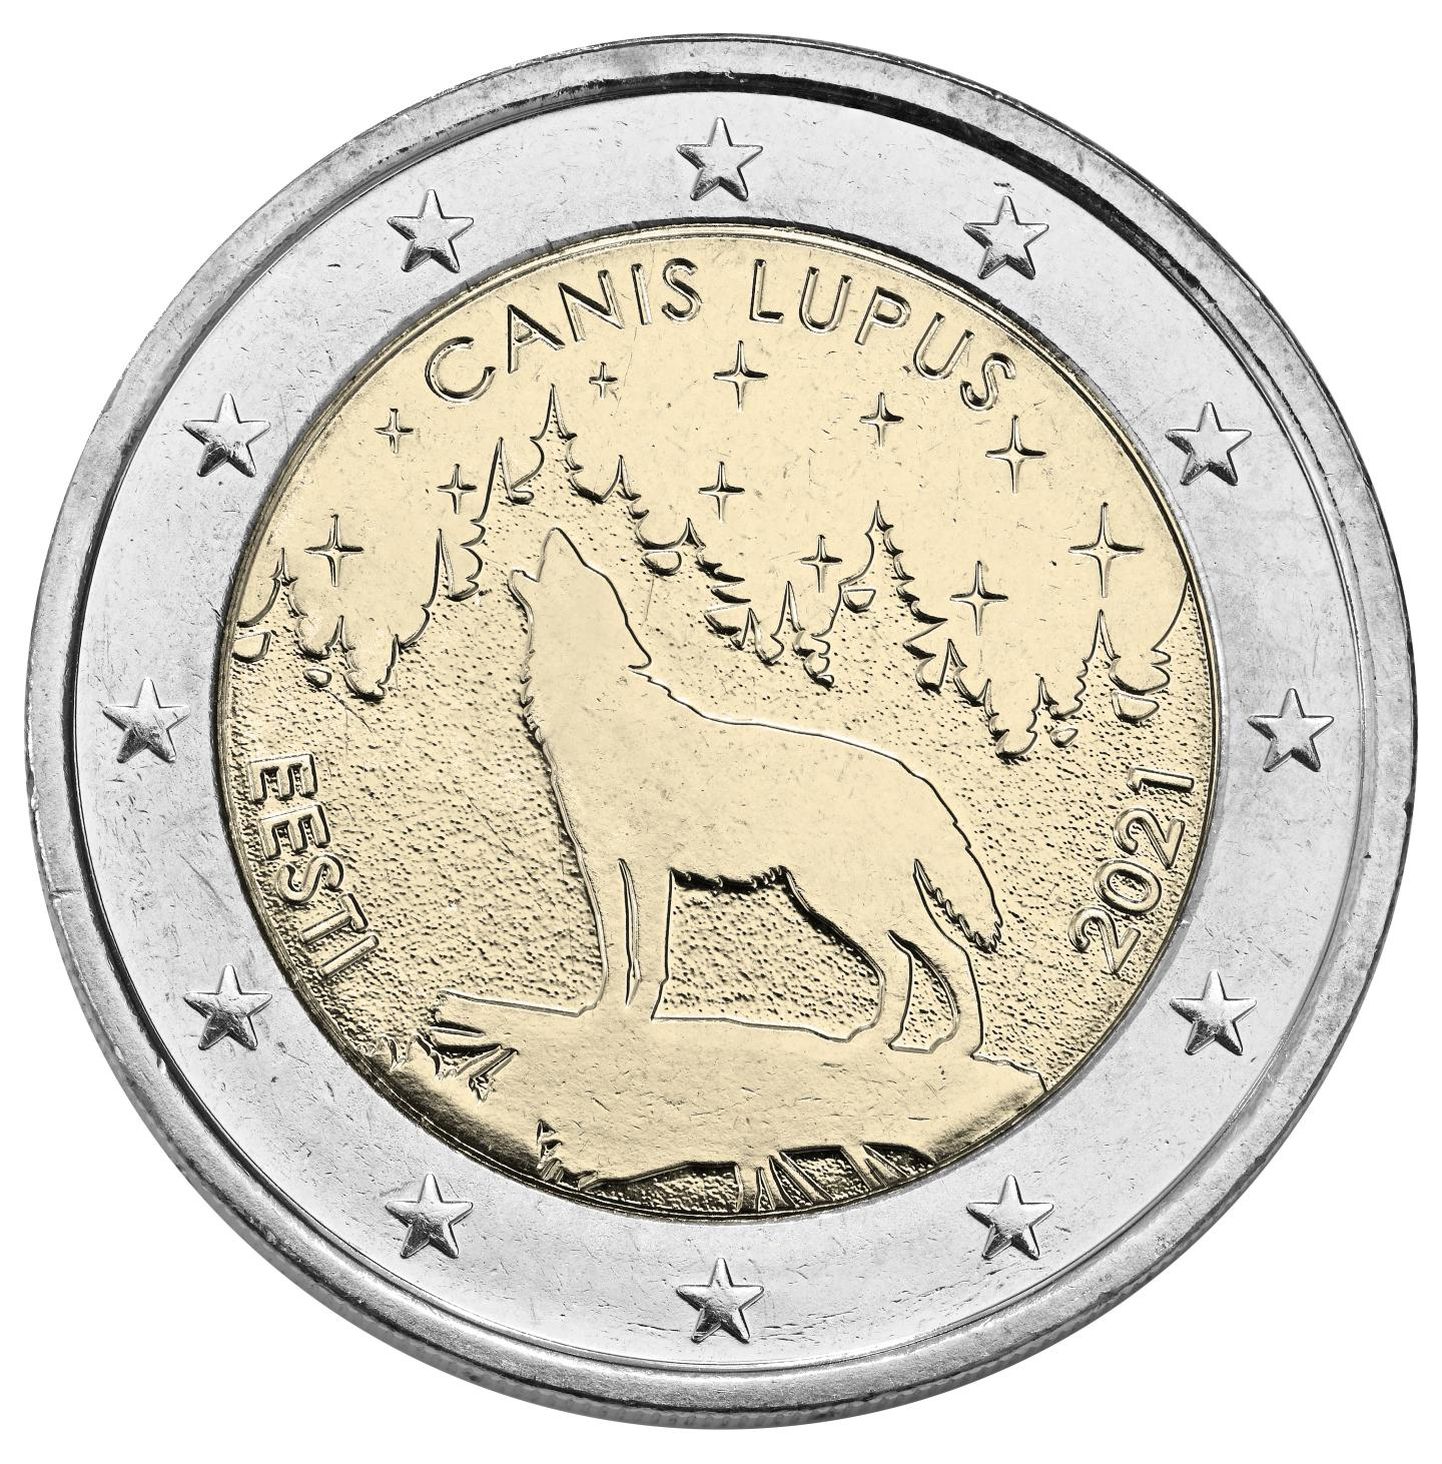 2 eurot väärt münt hakkab tutvustama Eesti rahvuslooma.